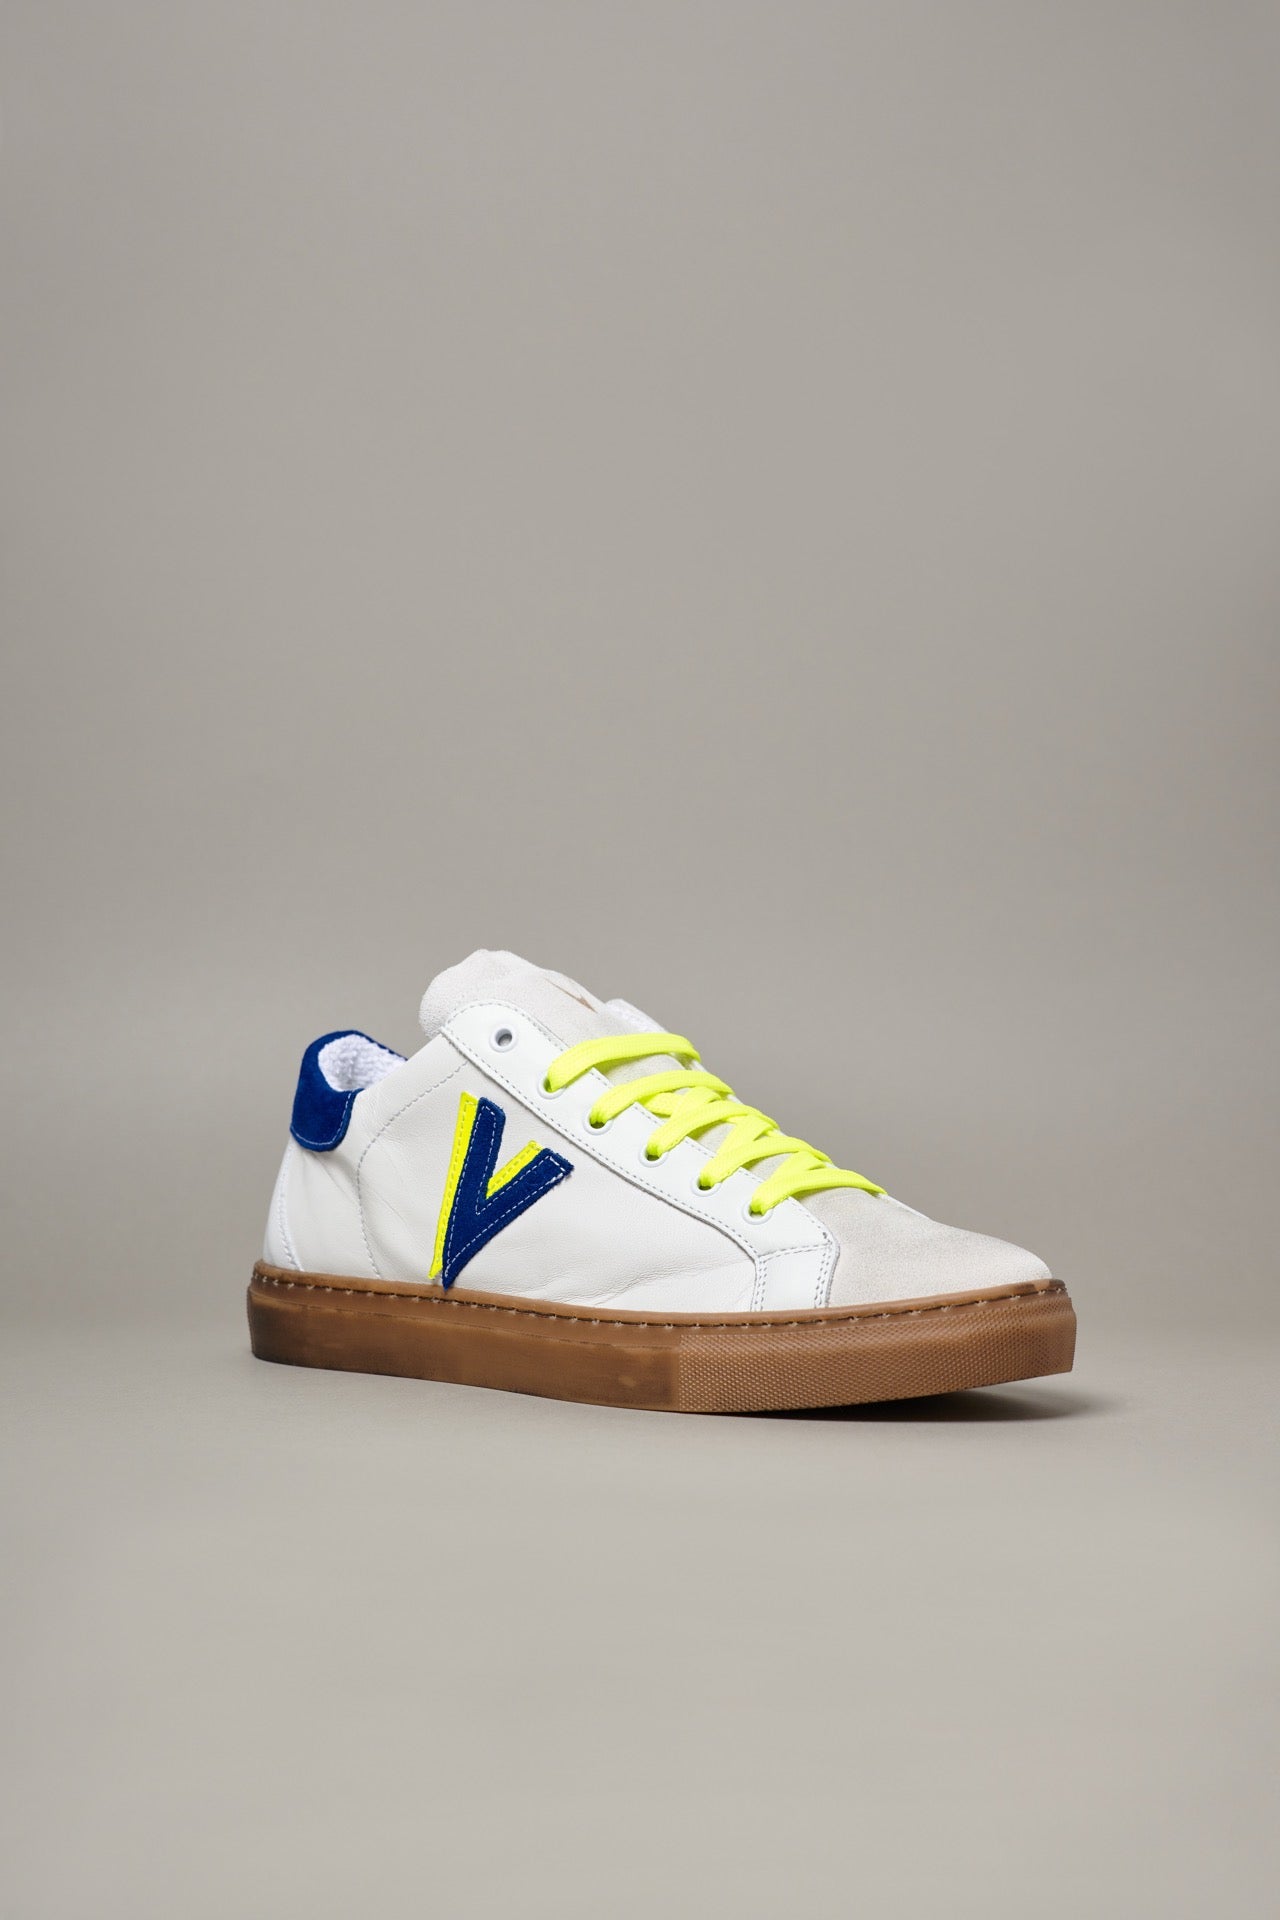 OLYMPIC V - Sneakers a suola bassa Bianca con retro e inserto bicolor Blu e Giallo Fluo